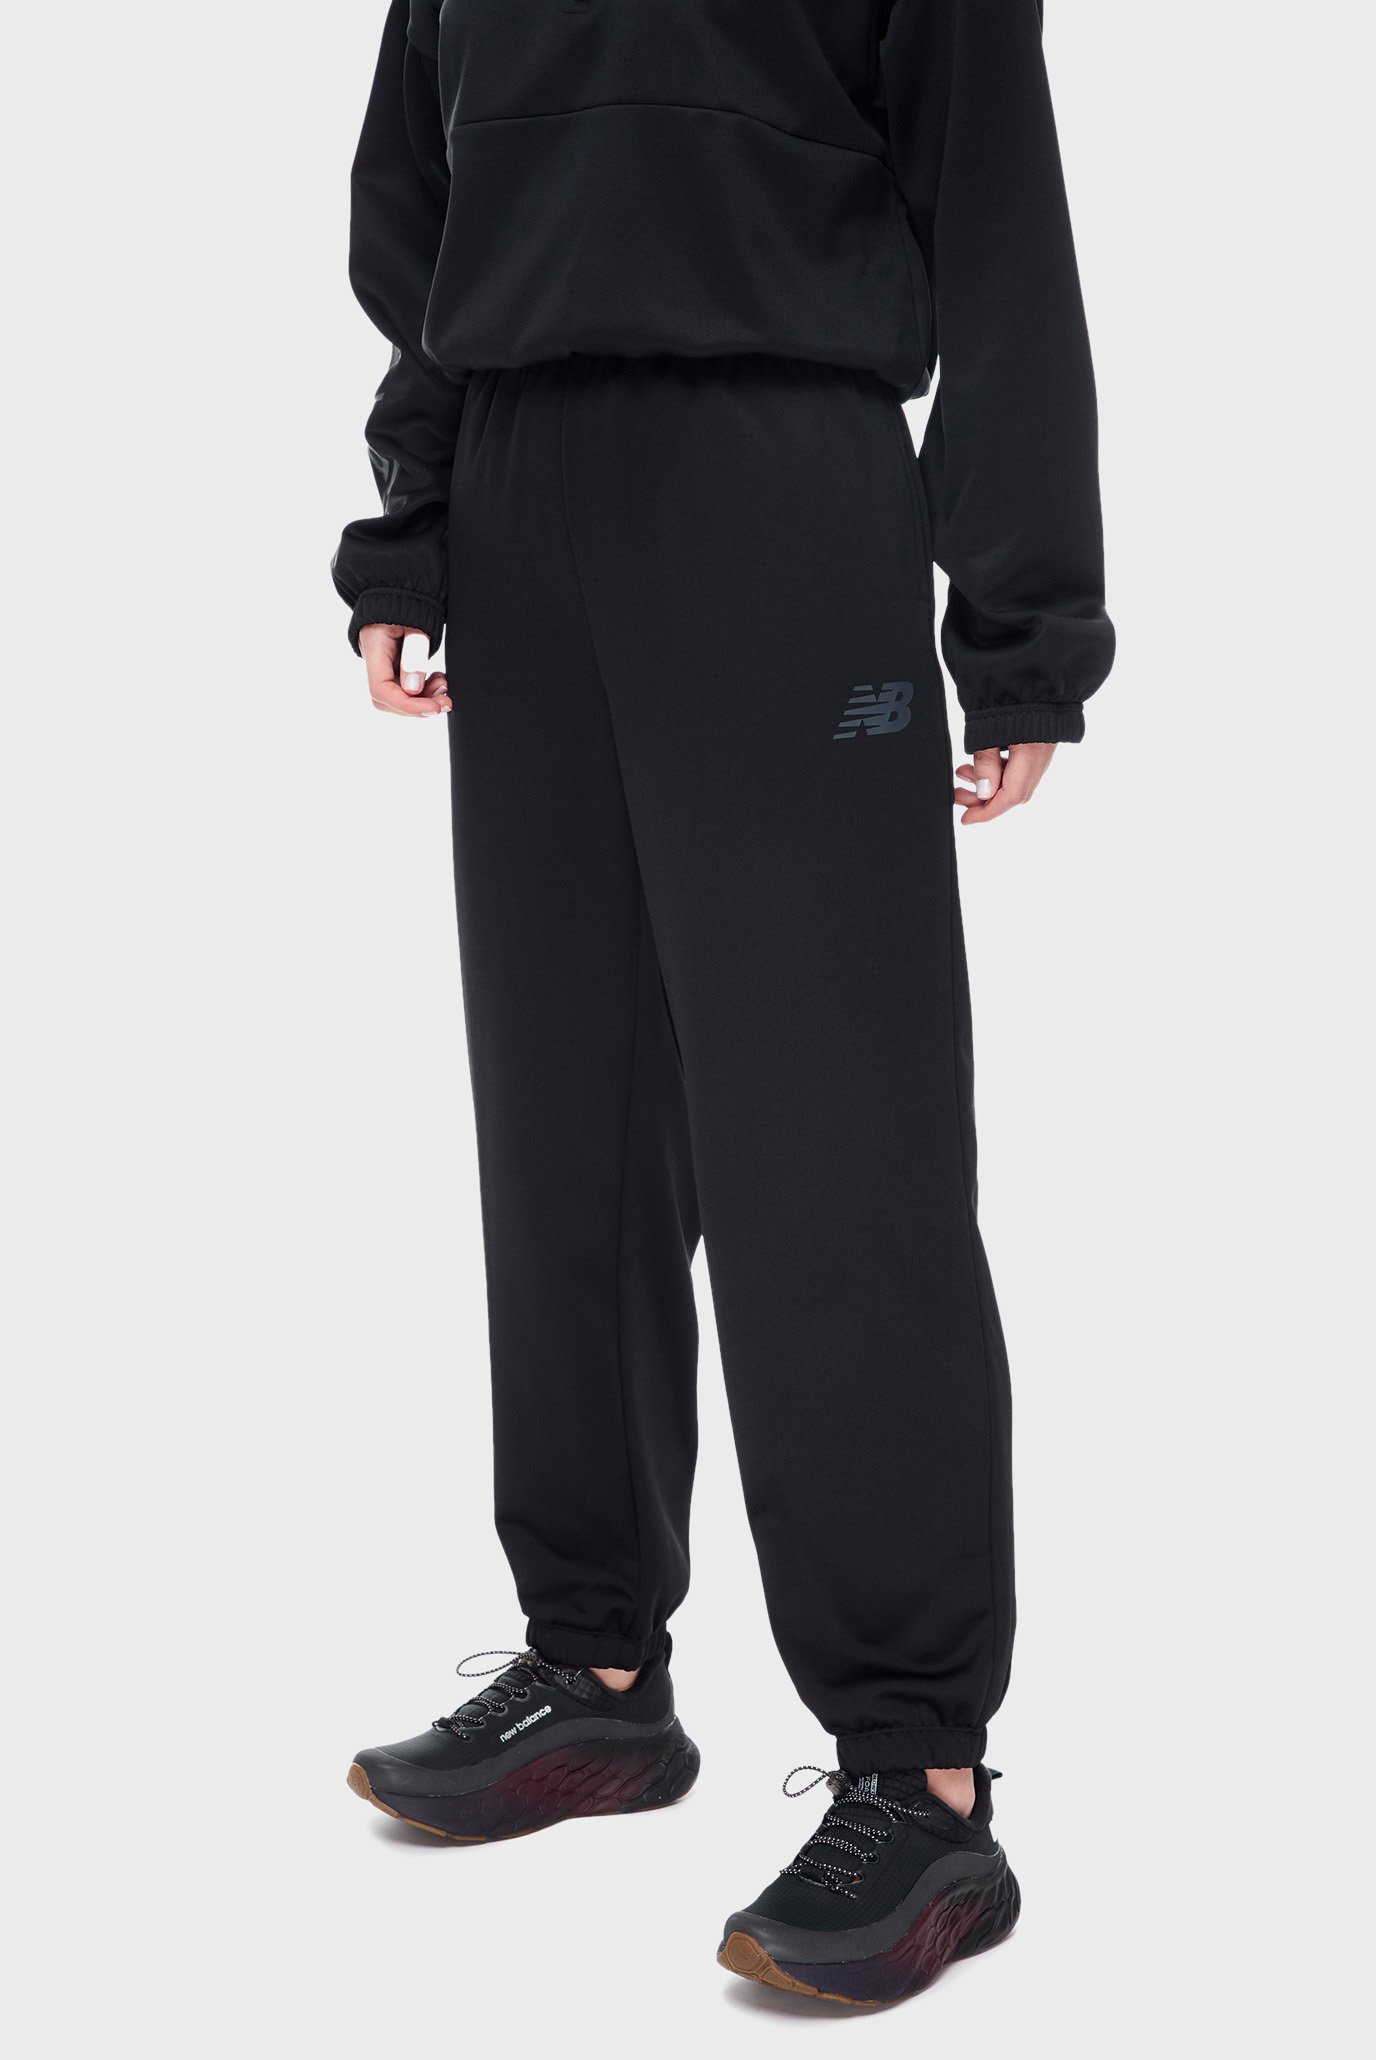 Жіночі чорні спортивні штани Relentless Performance Fleece 1